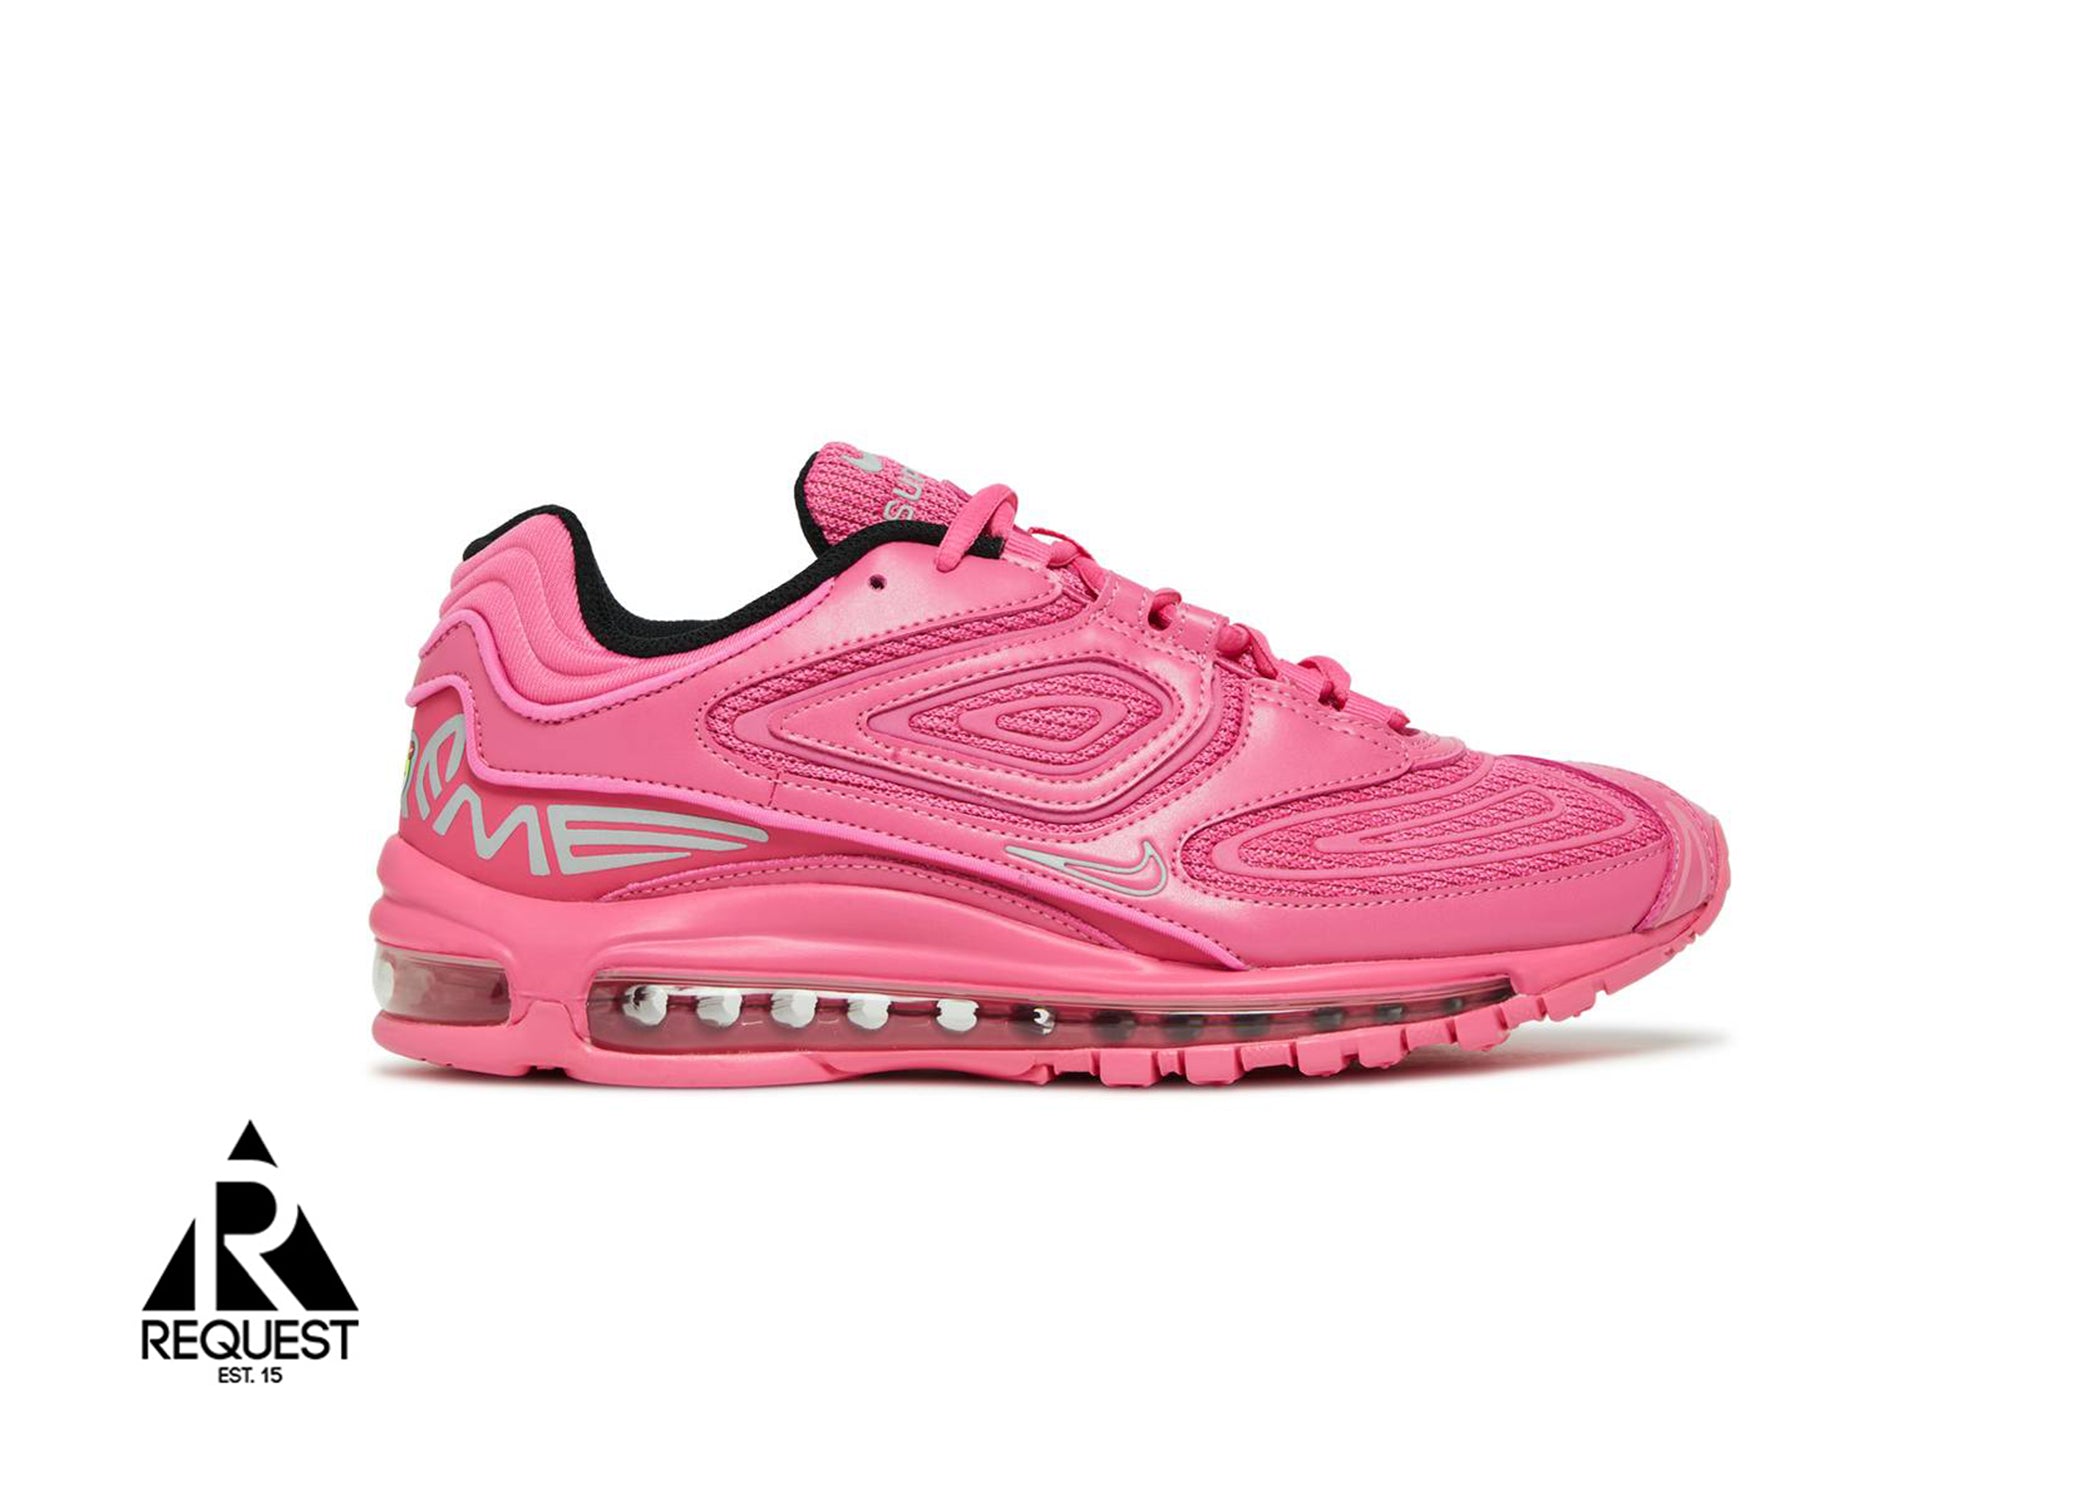 Nike Air Max 98 TL "Supreme Pink"